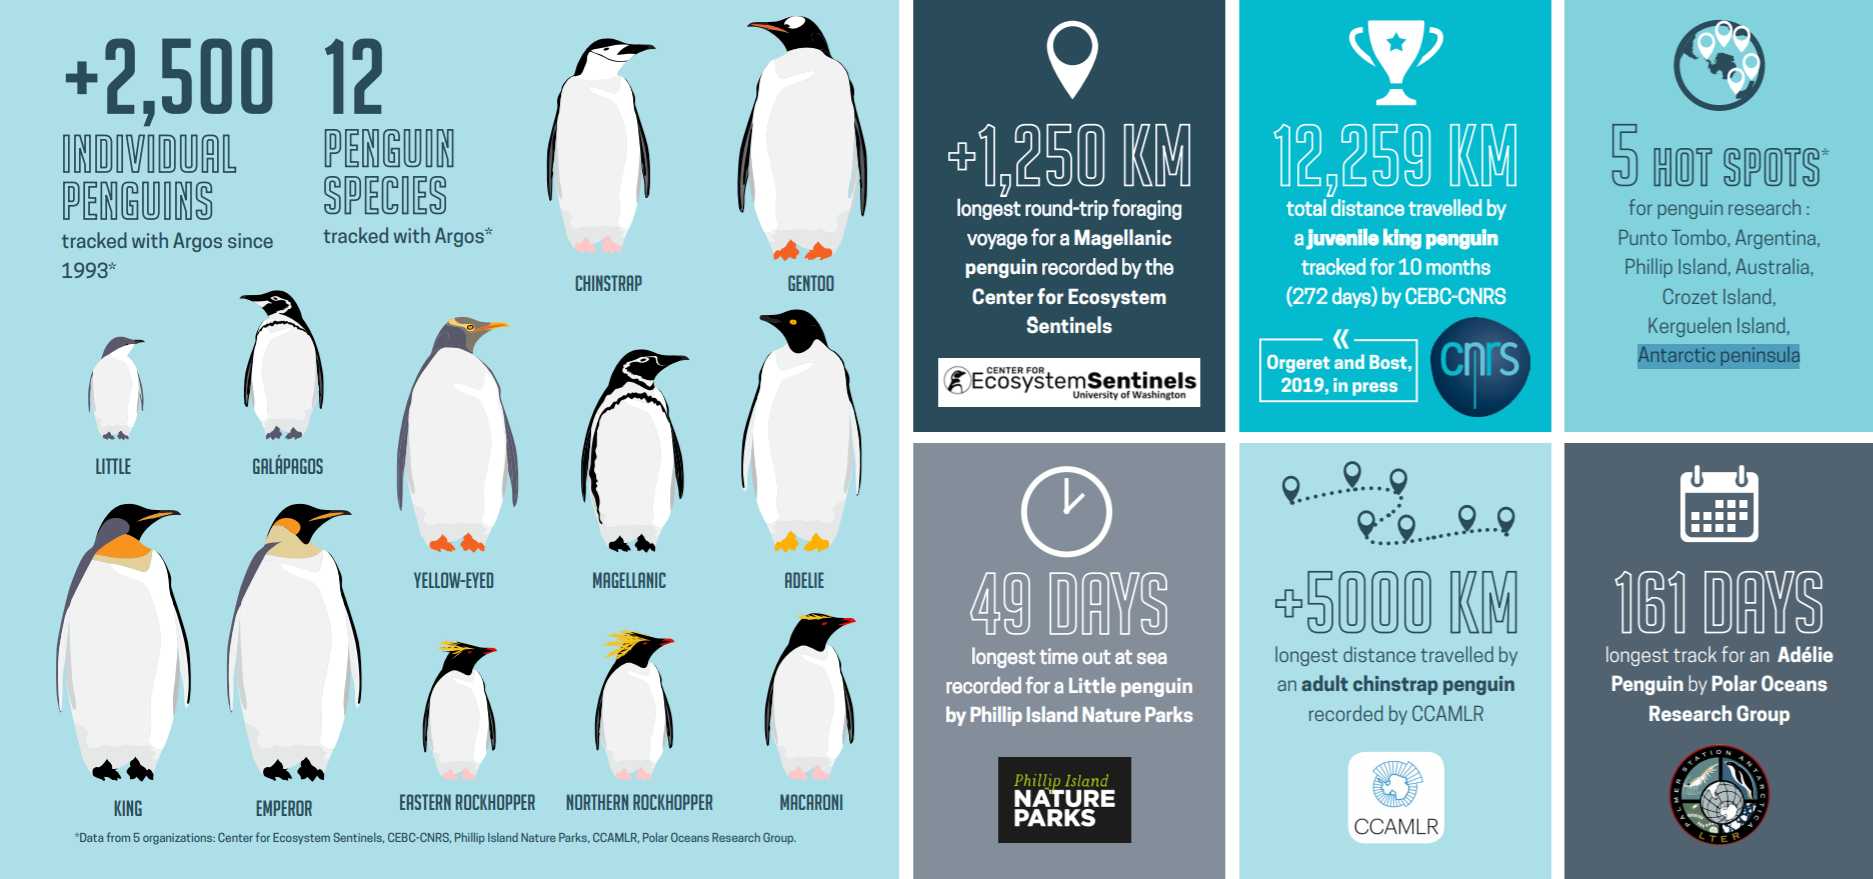 some key figures concerning penguins